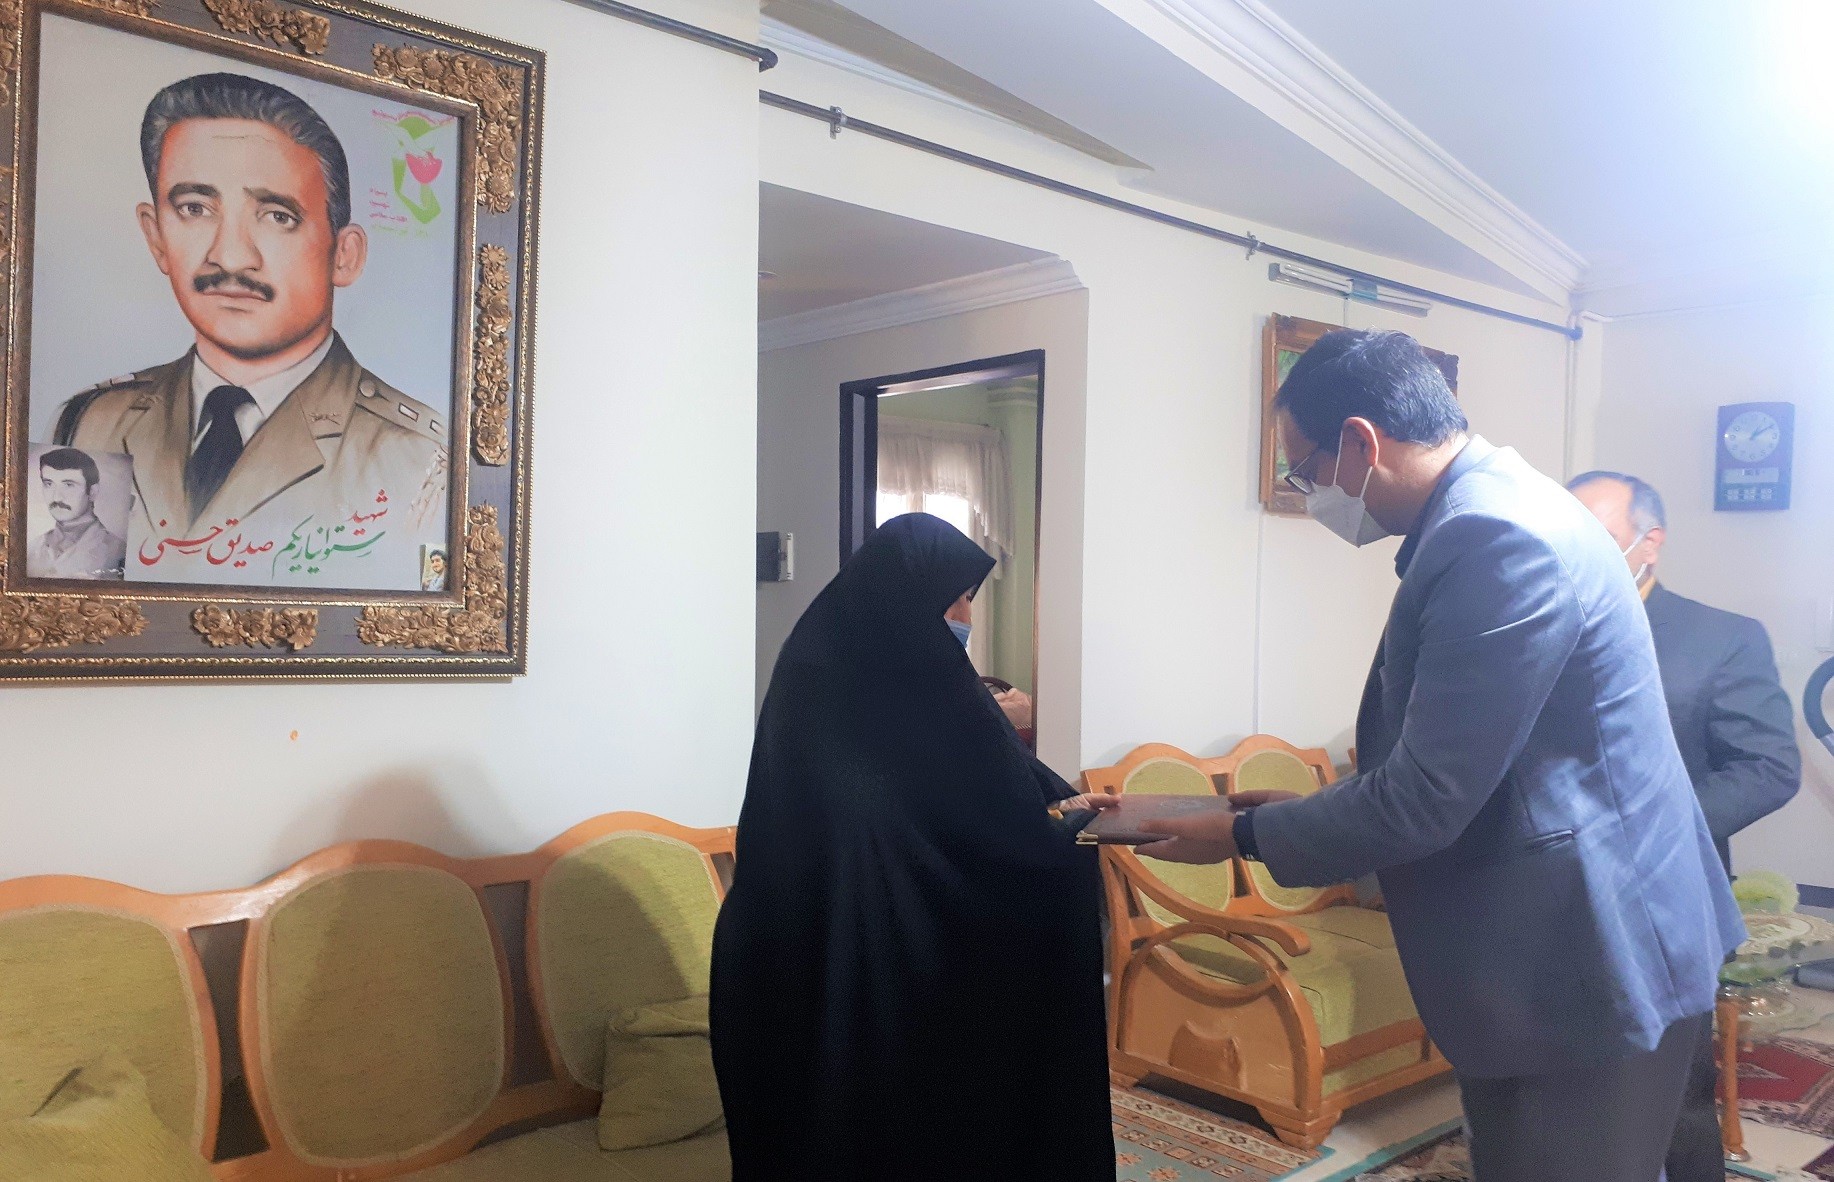 مدیران پارک علم و فناوری گلستان با همسر و خواهر دو شهید والامقام ارتشی 8 سال دفاع مقدس دیدار کردند.